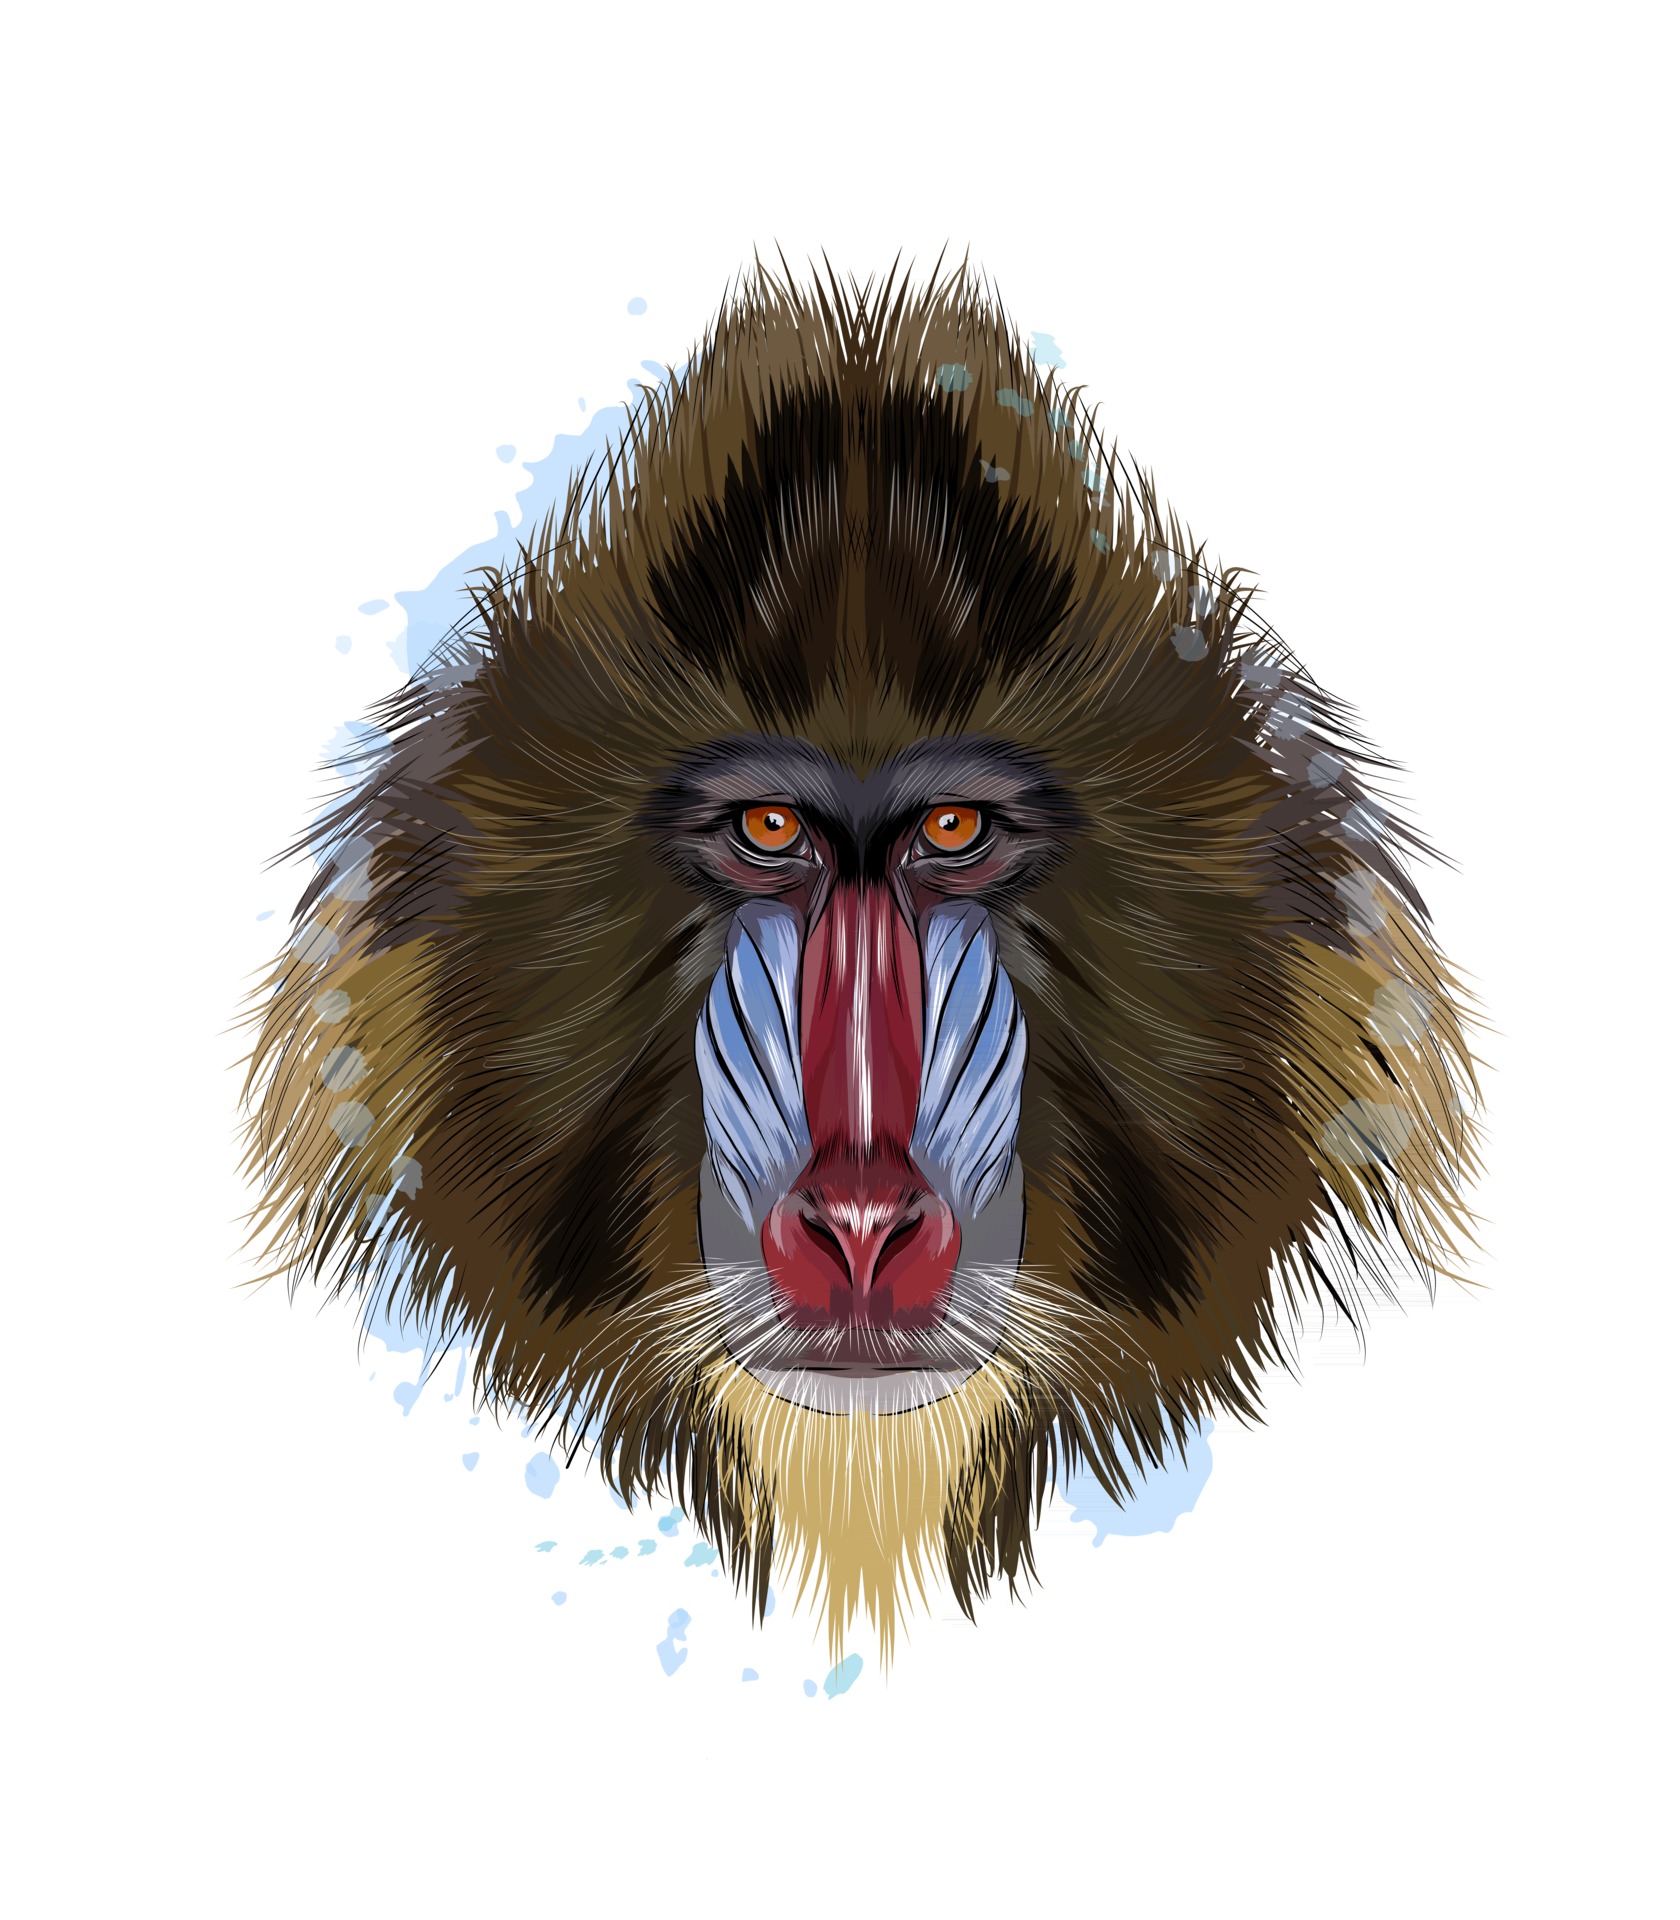 Desenho de macaco realista · Creative Fabrica